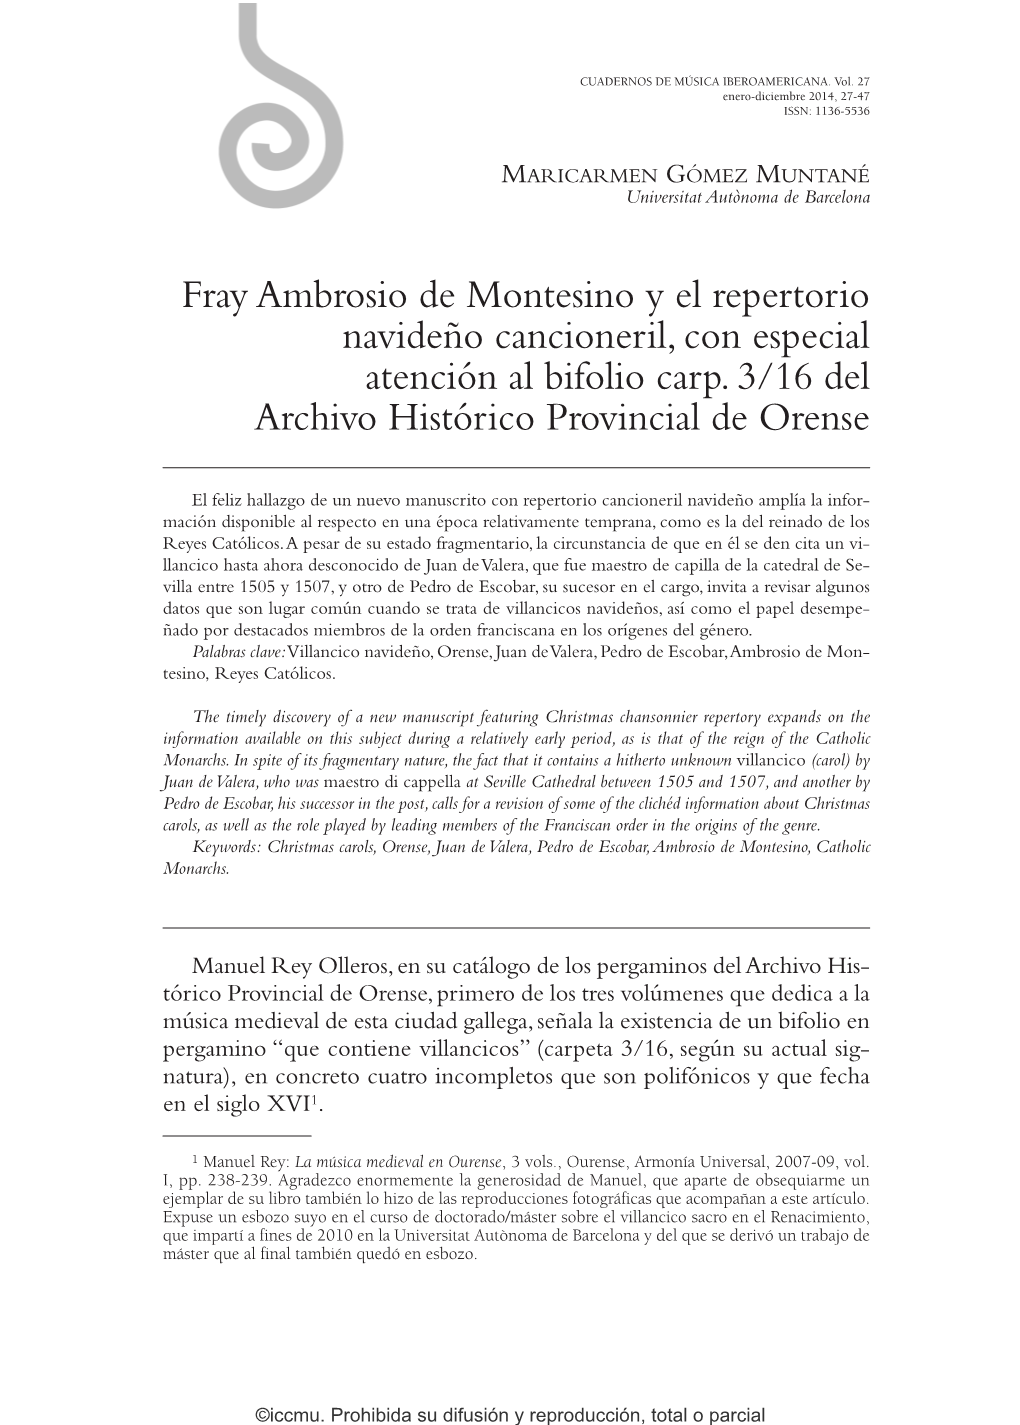 Fray Ambrosio De Montesino Y El Repertorio Navideño Cancioneril, Con Especial Atención Al Bifolio Carp